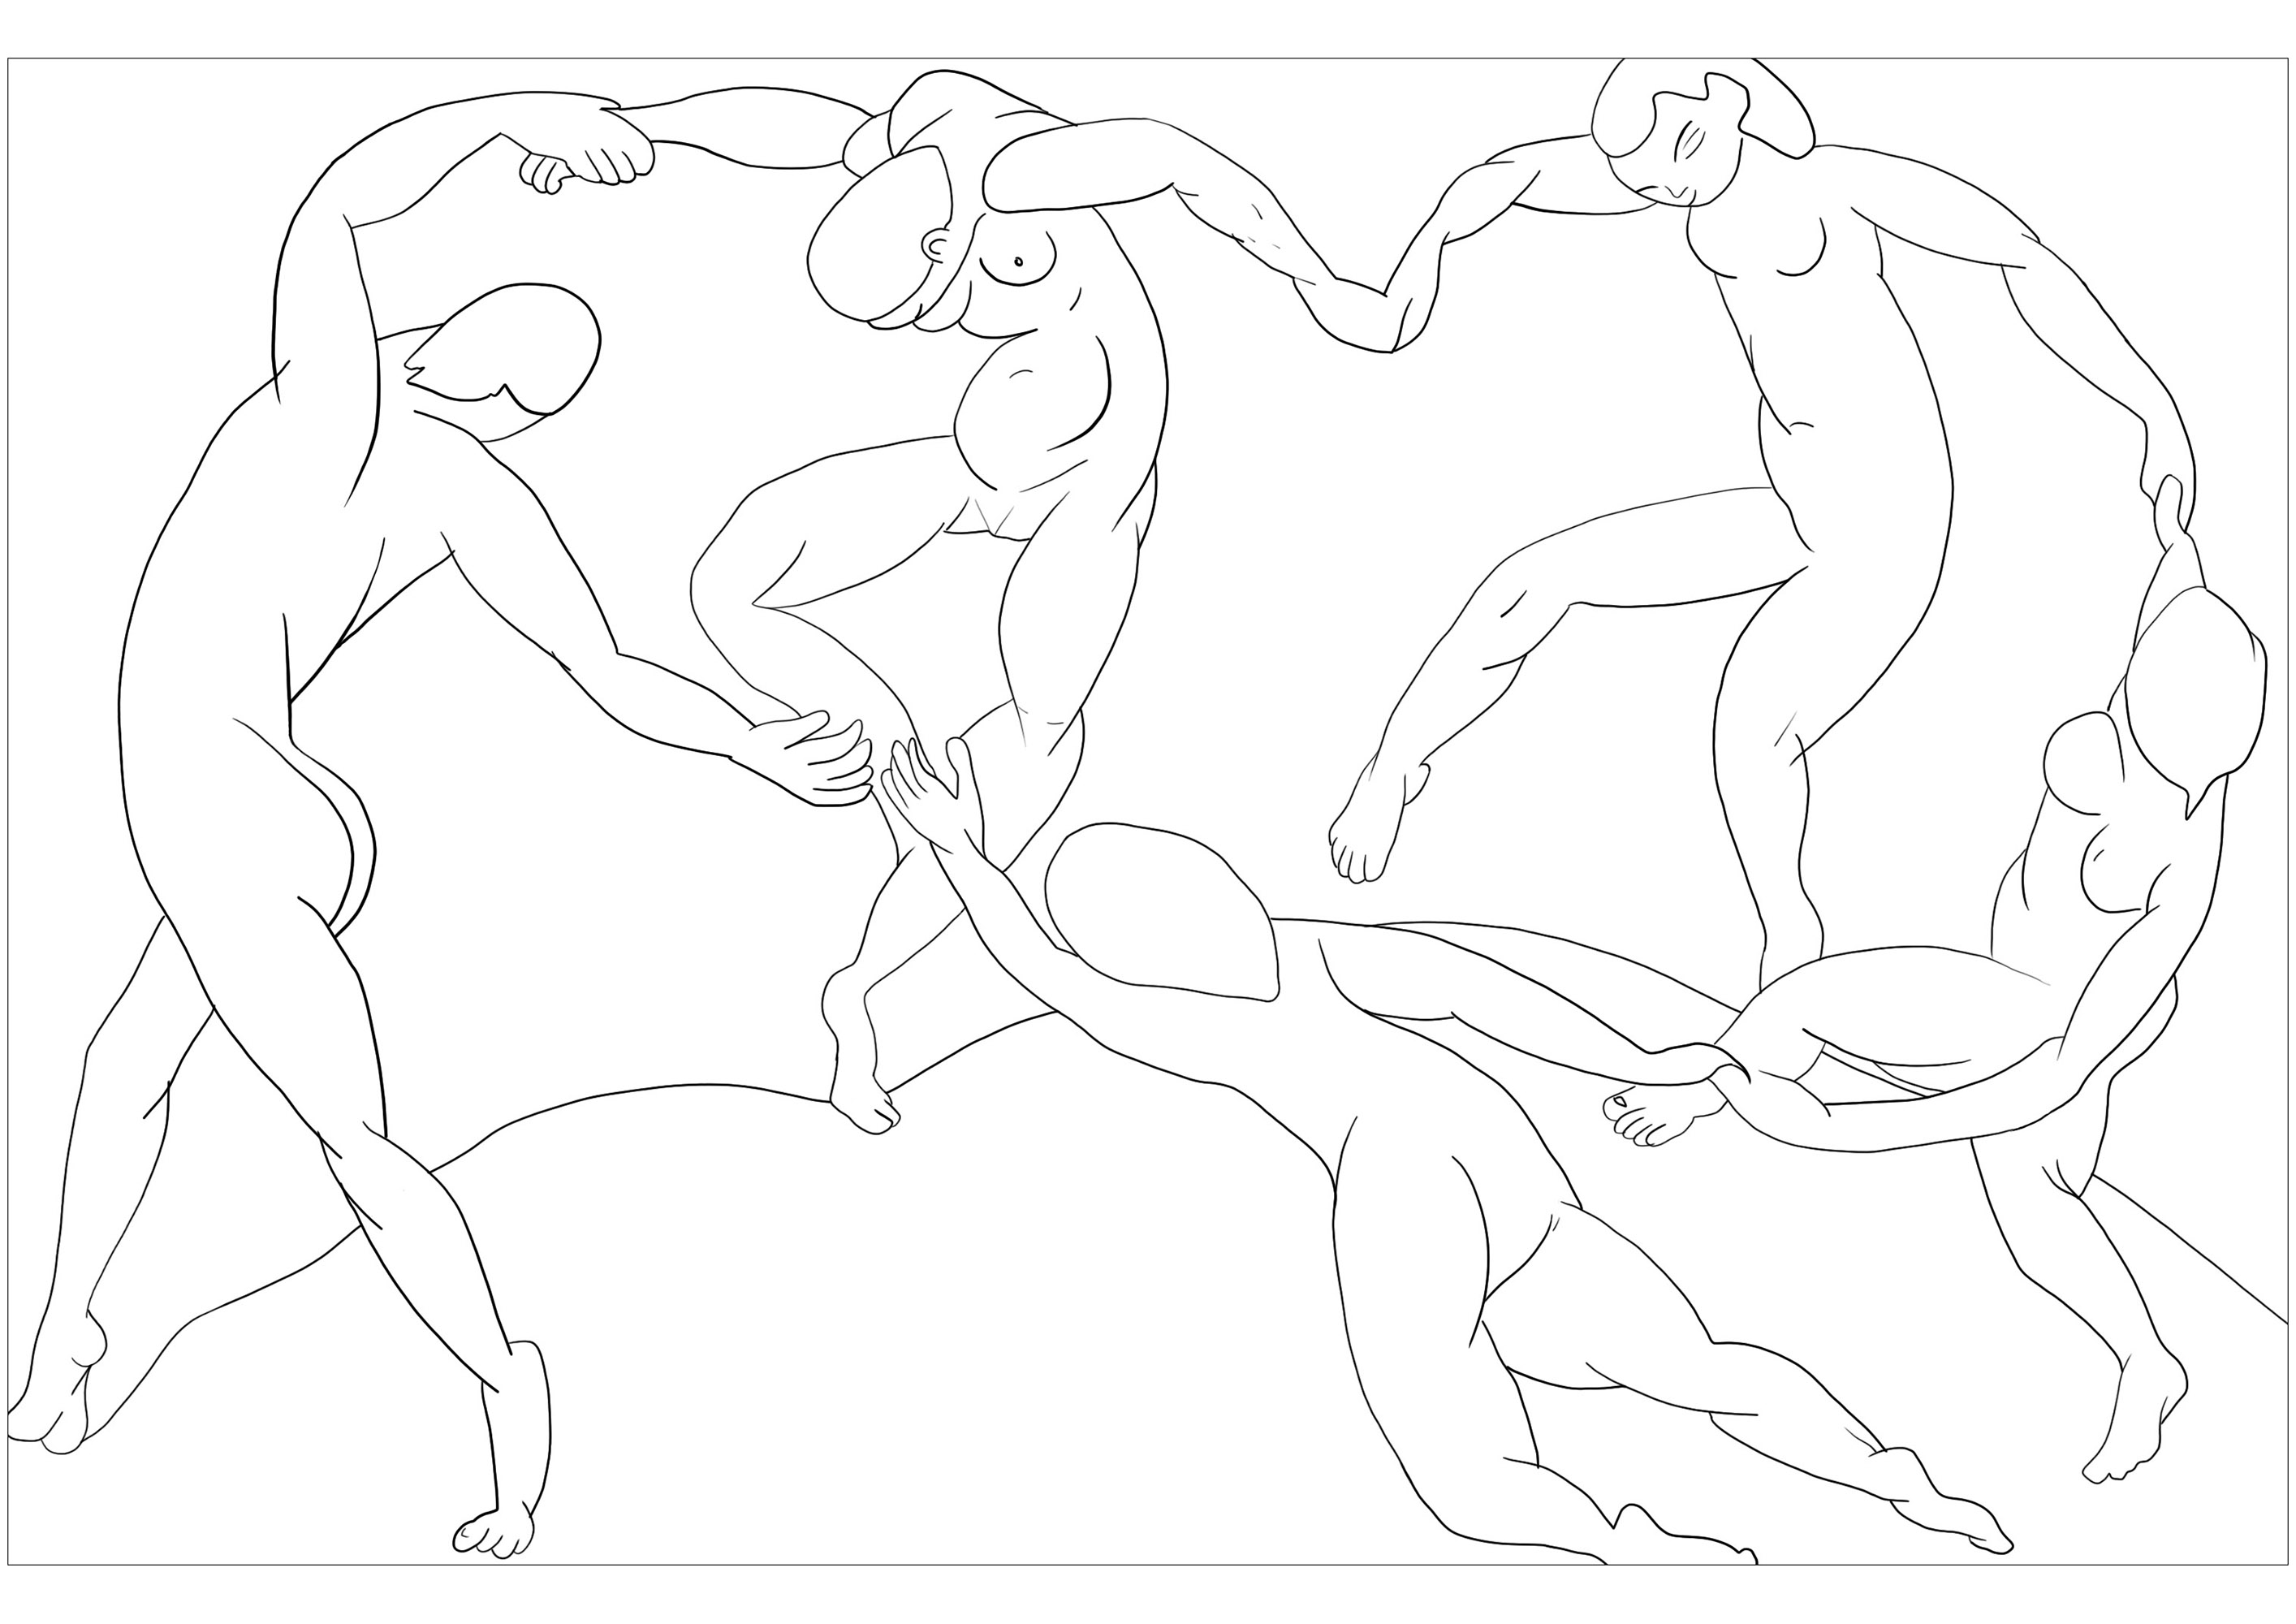 Página para colorear creada a partir de La danza de Henri Matisse (1909-1910), Artista : Olivier